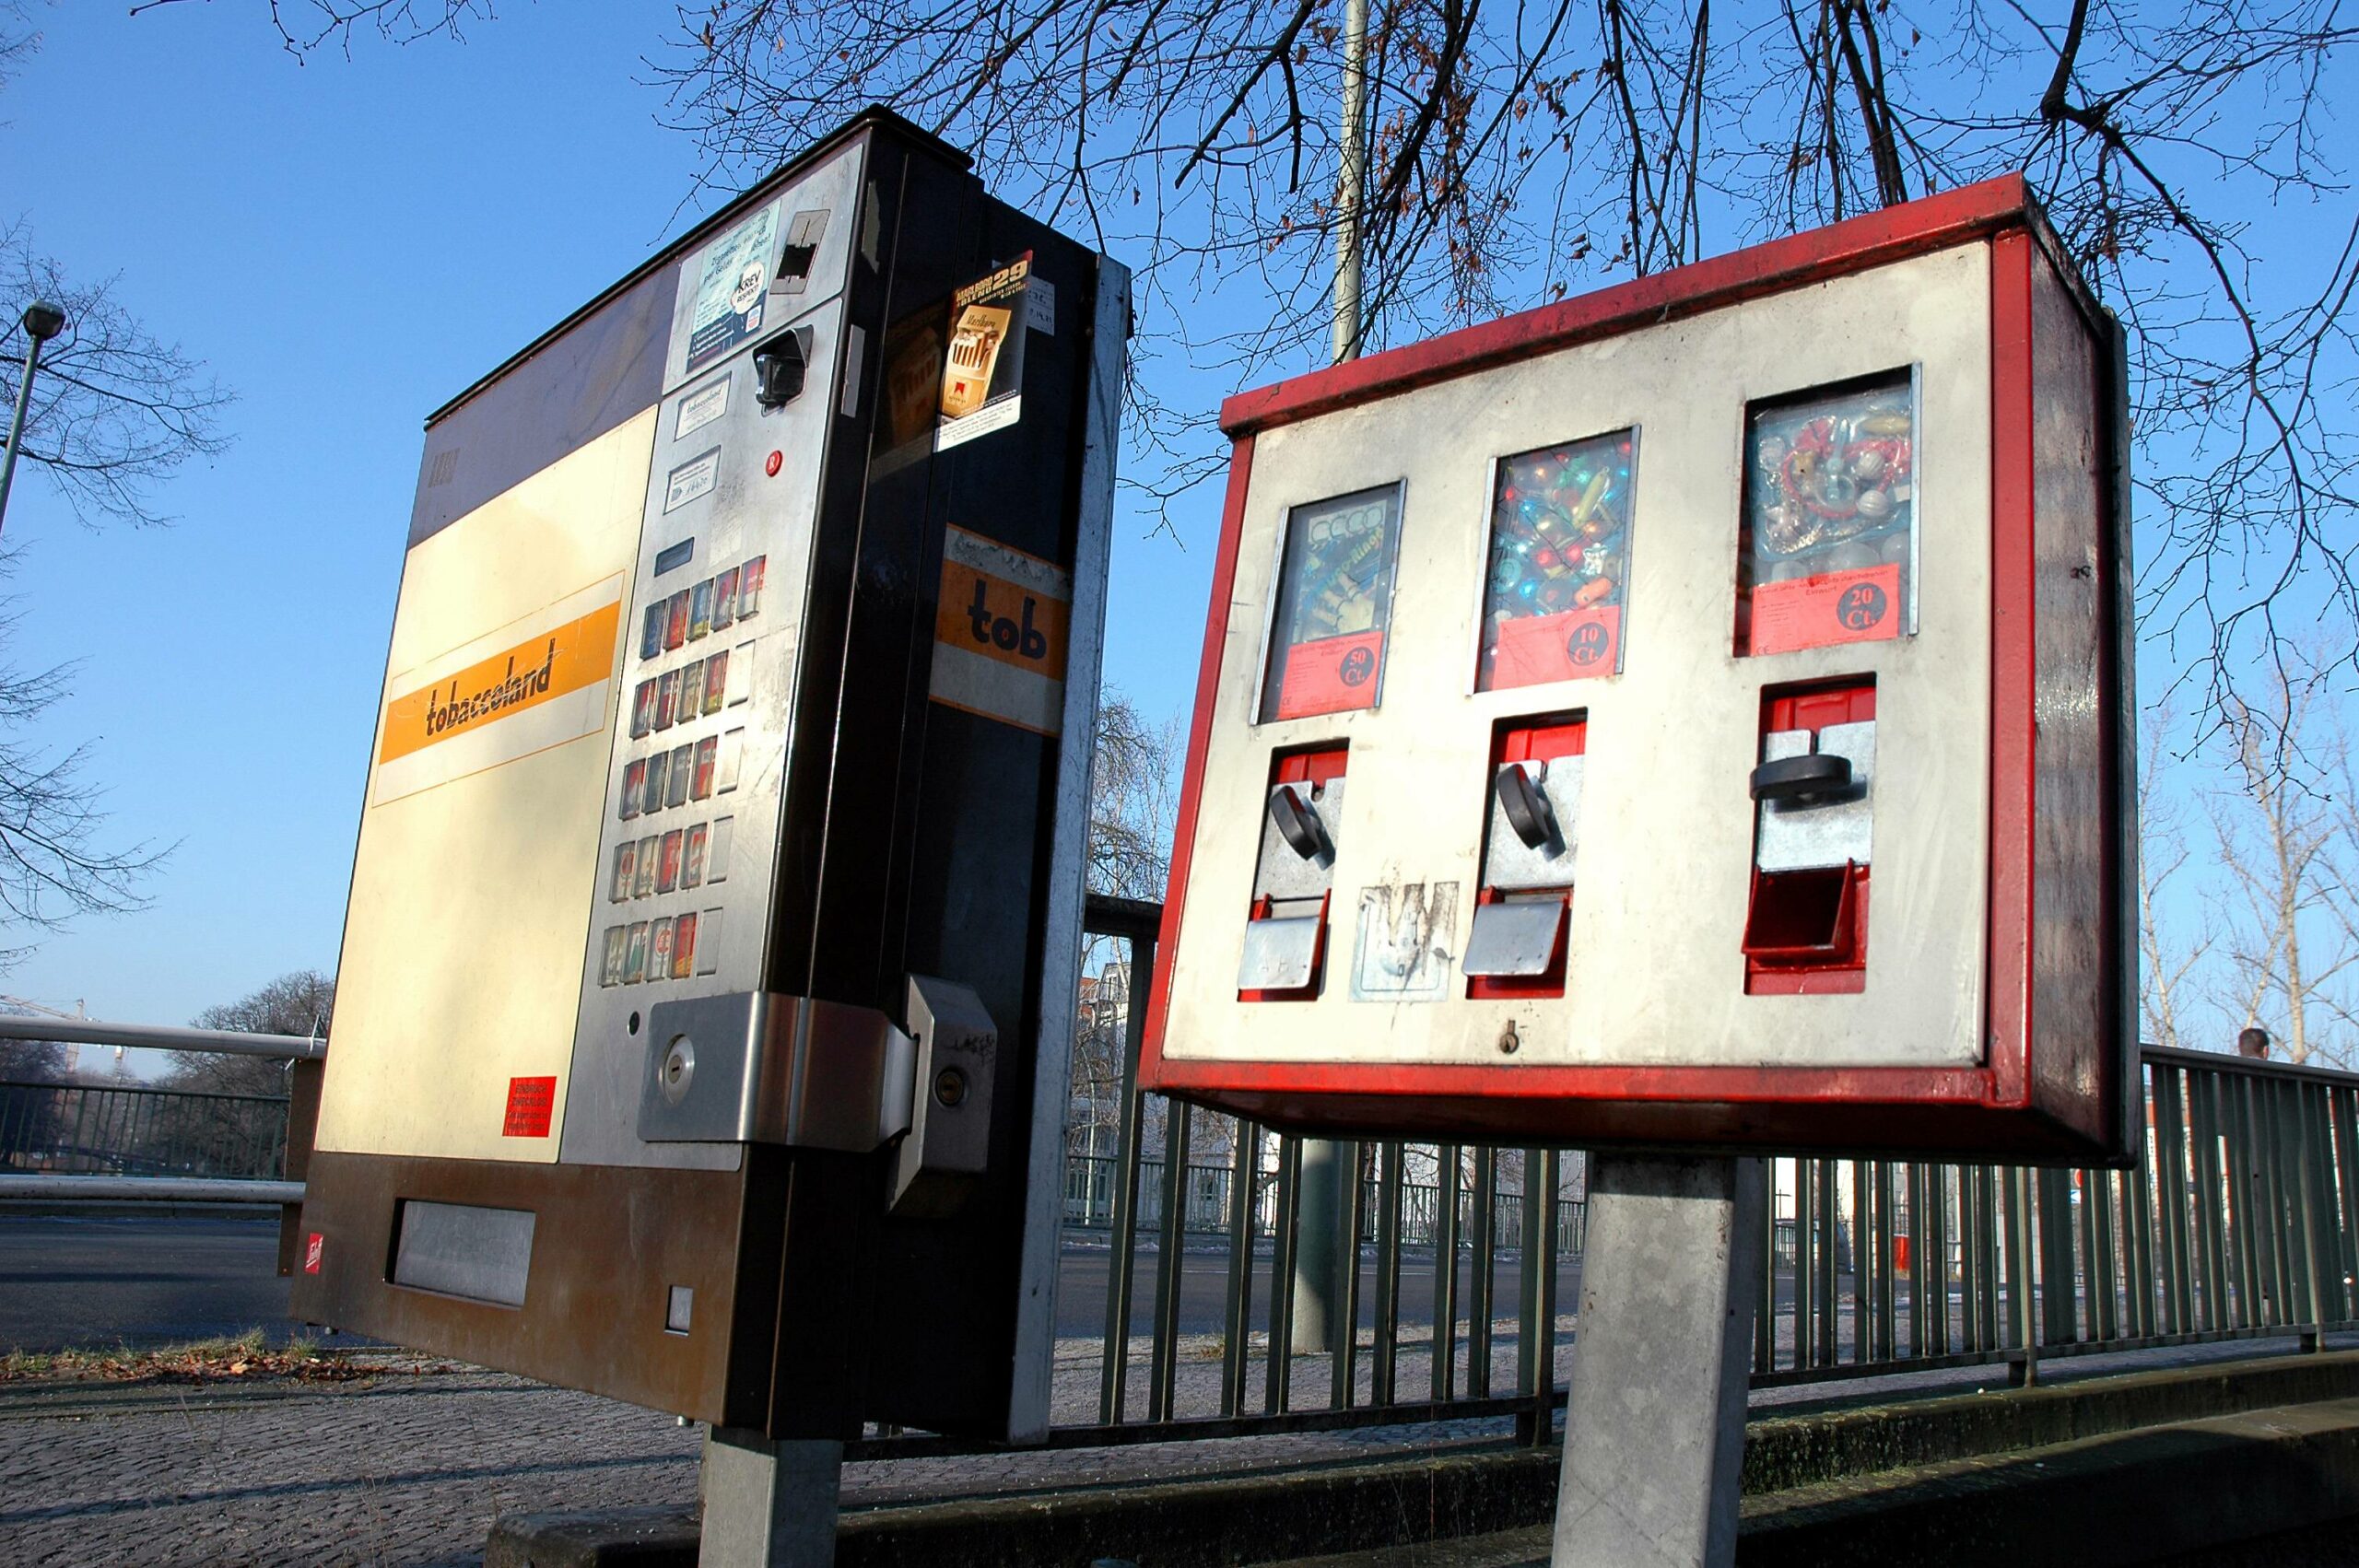 Zigarettenautomat und Kaugummiautomat, Schulter an Schulter. Foto: Imago/Steinach